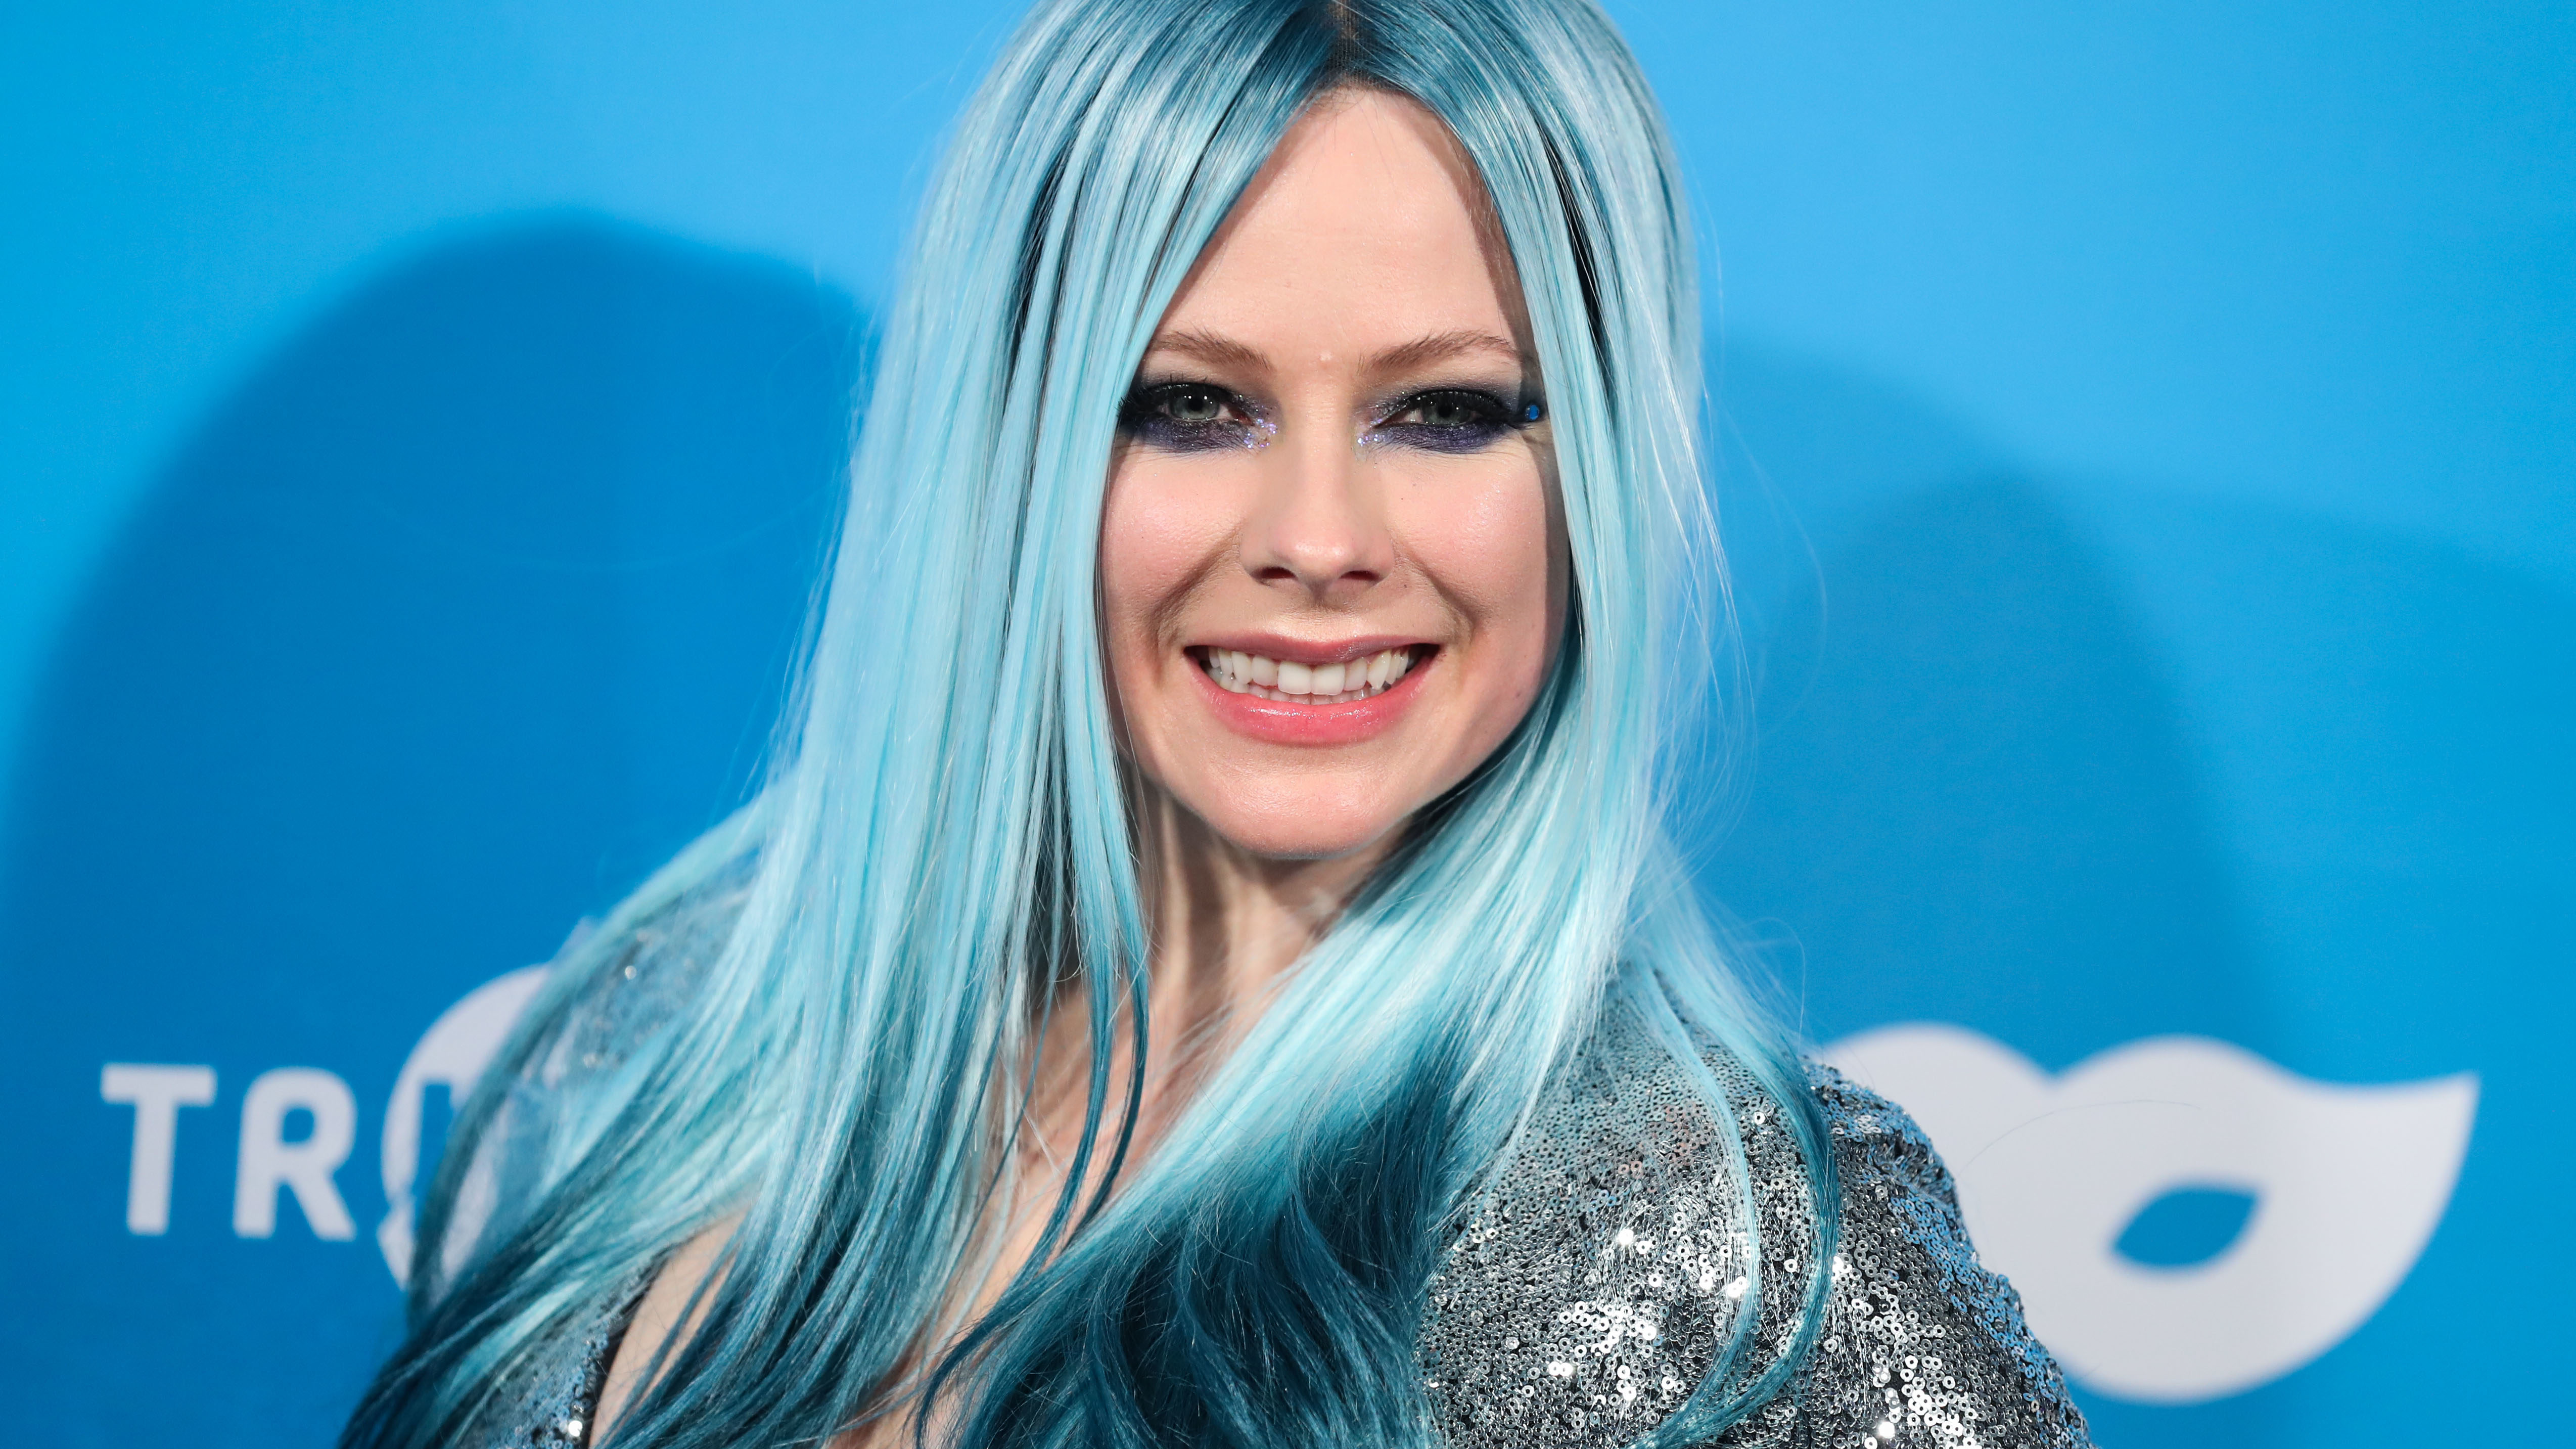 Szédületes luxusvillába ruházott be Avril Lavigne